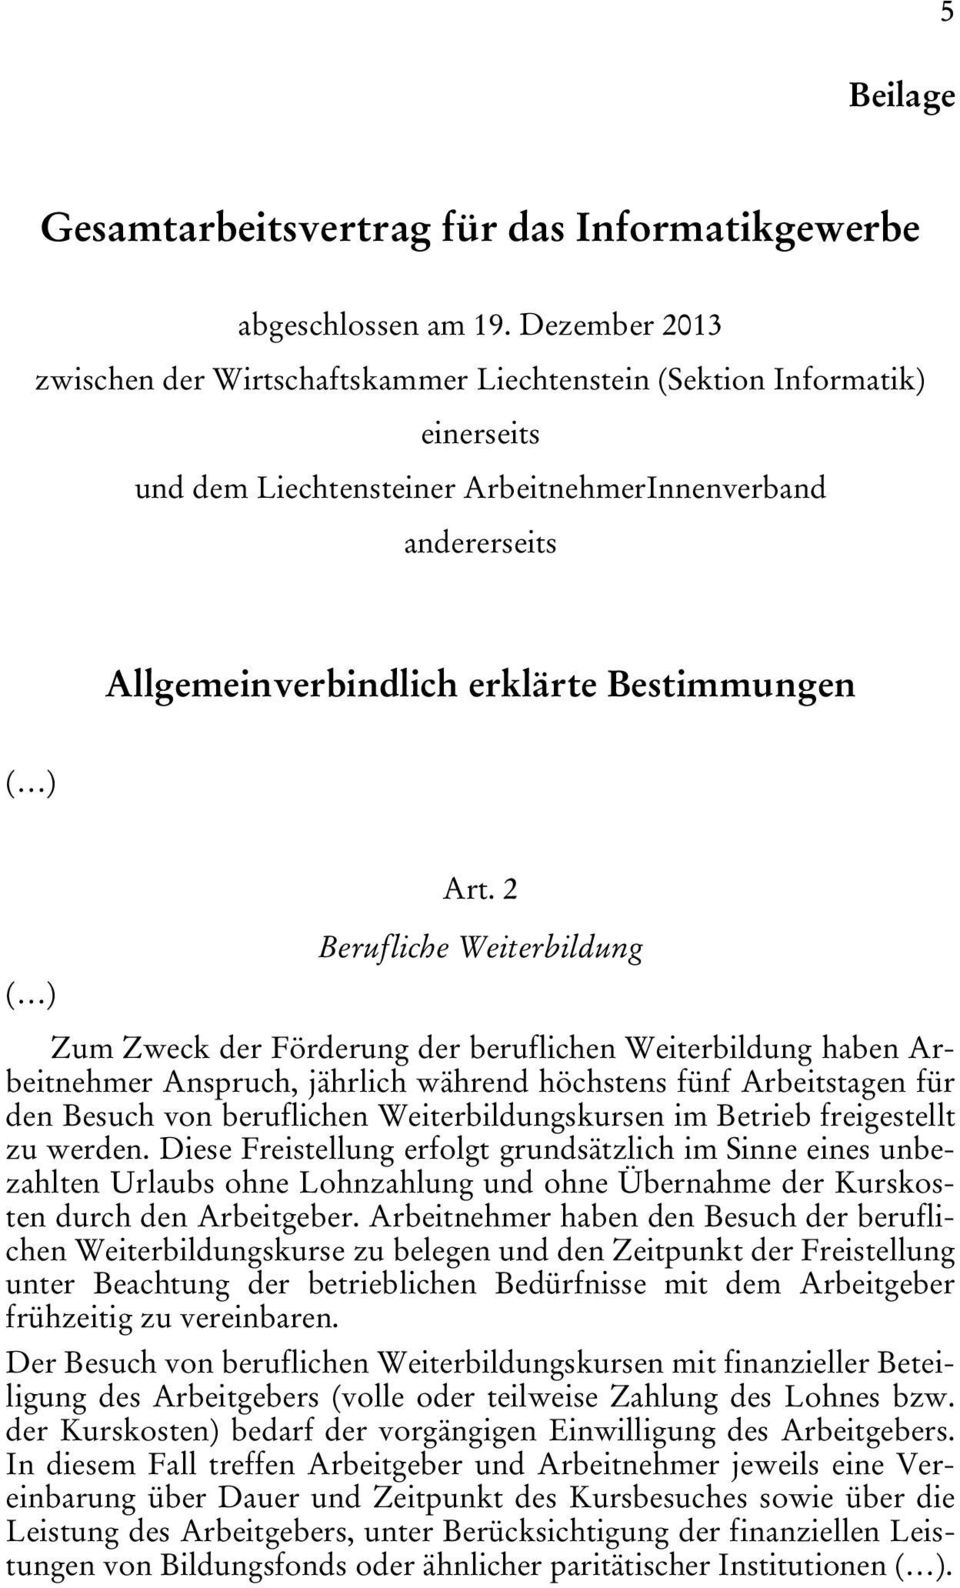 Liechtensteinisches Landesgesetzblatt Pdf